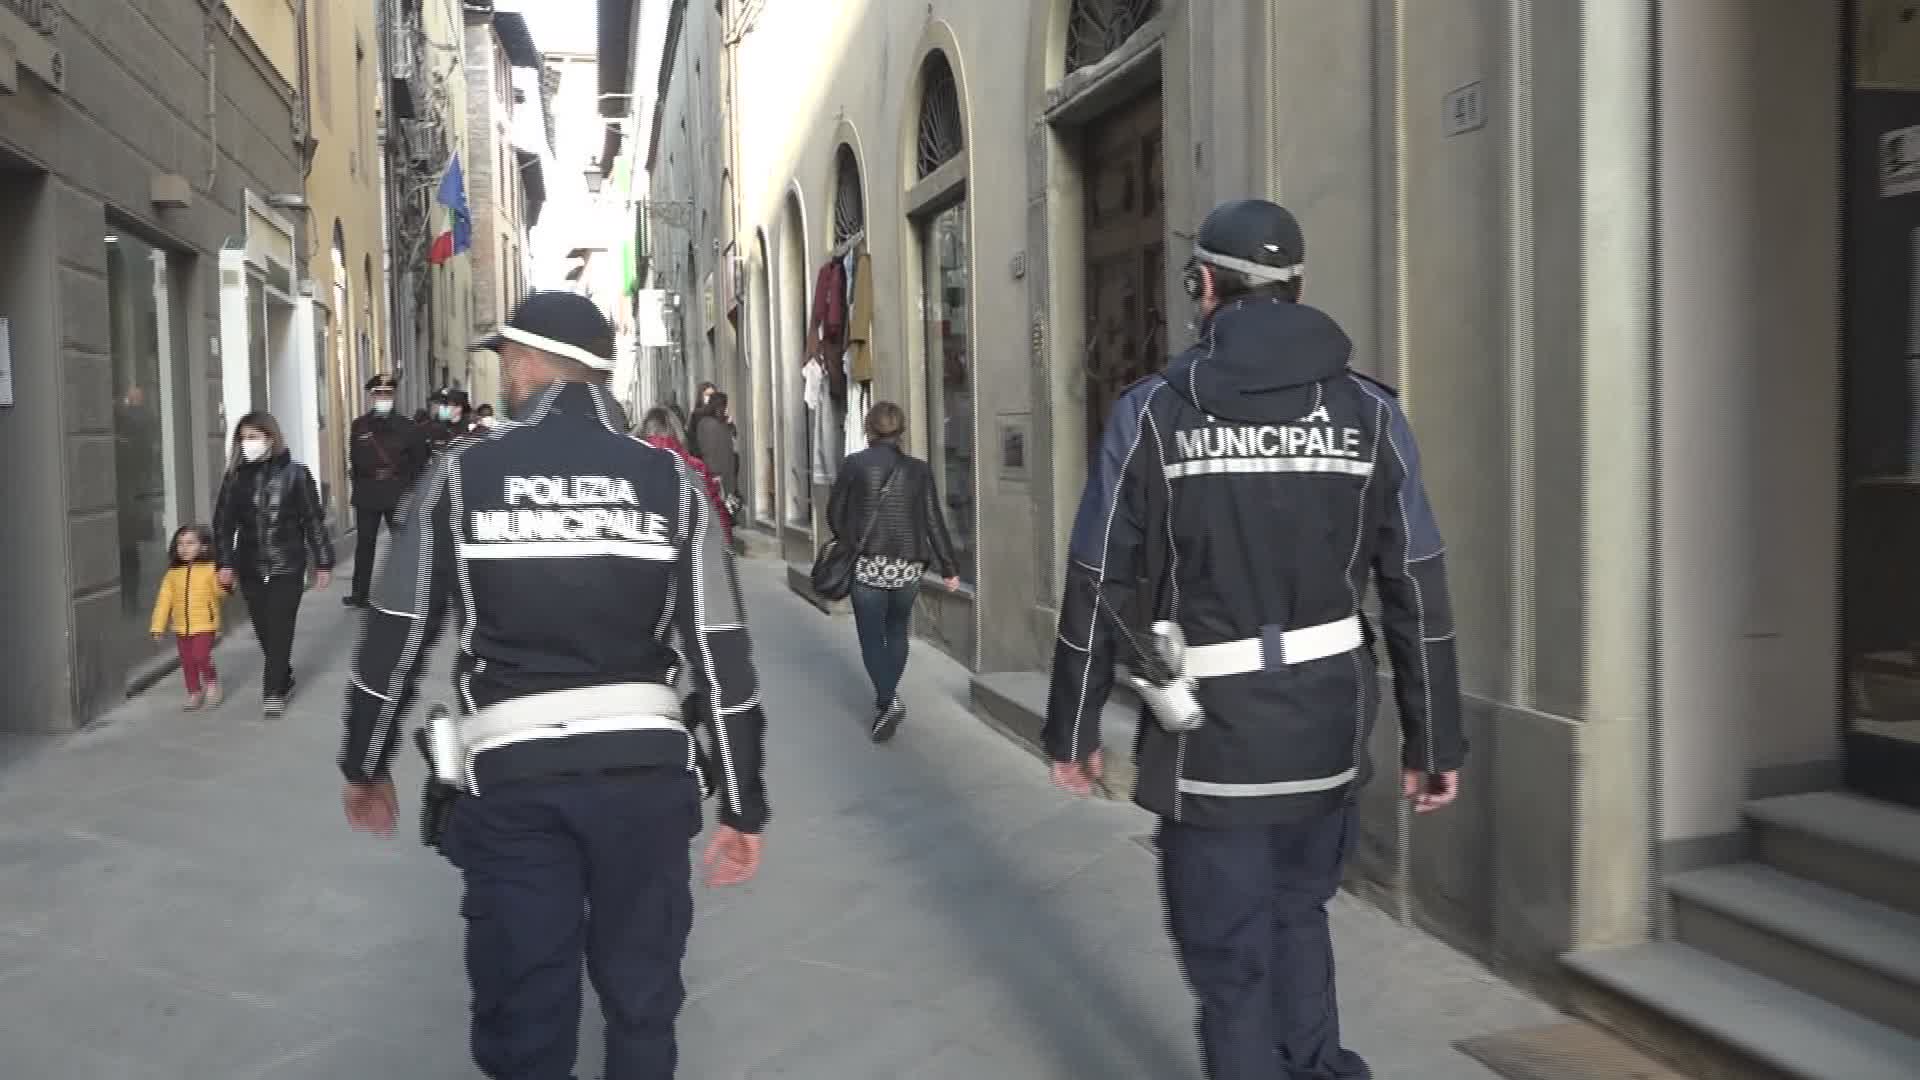 Pistoia: Polizia Municipale arresta ladra seriale